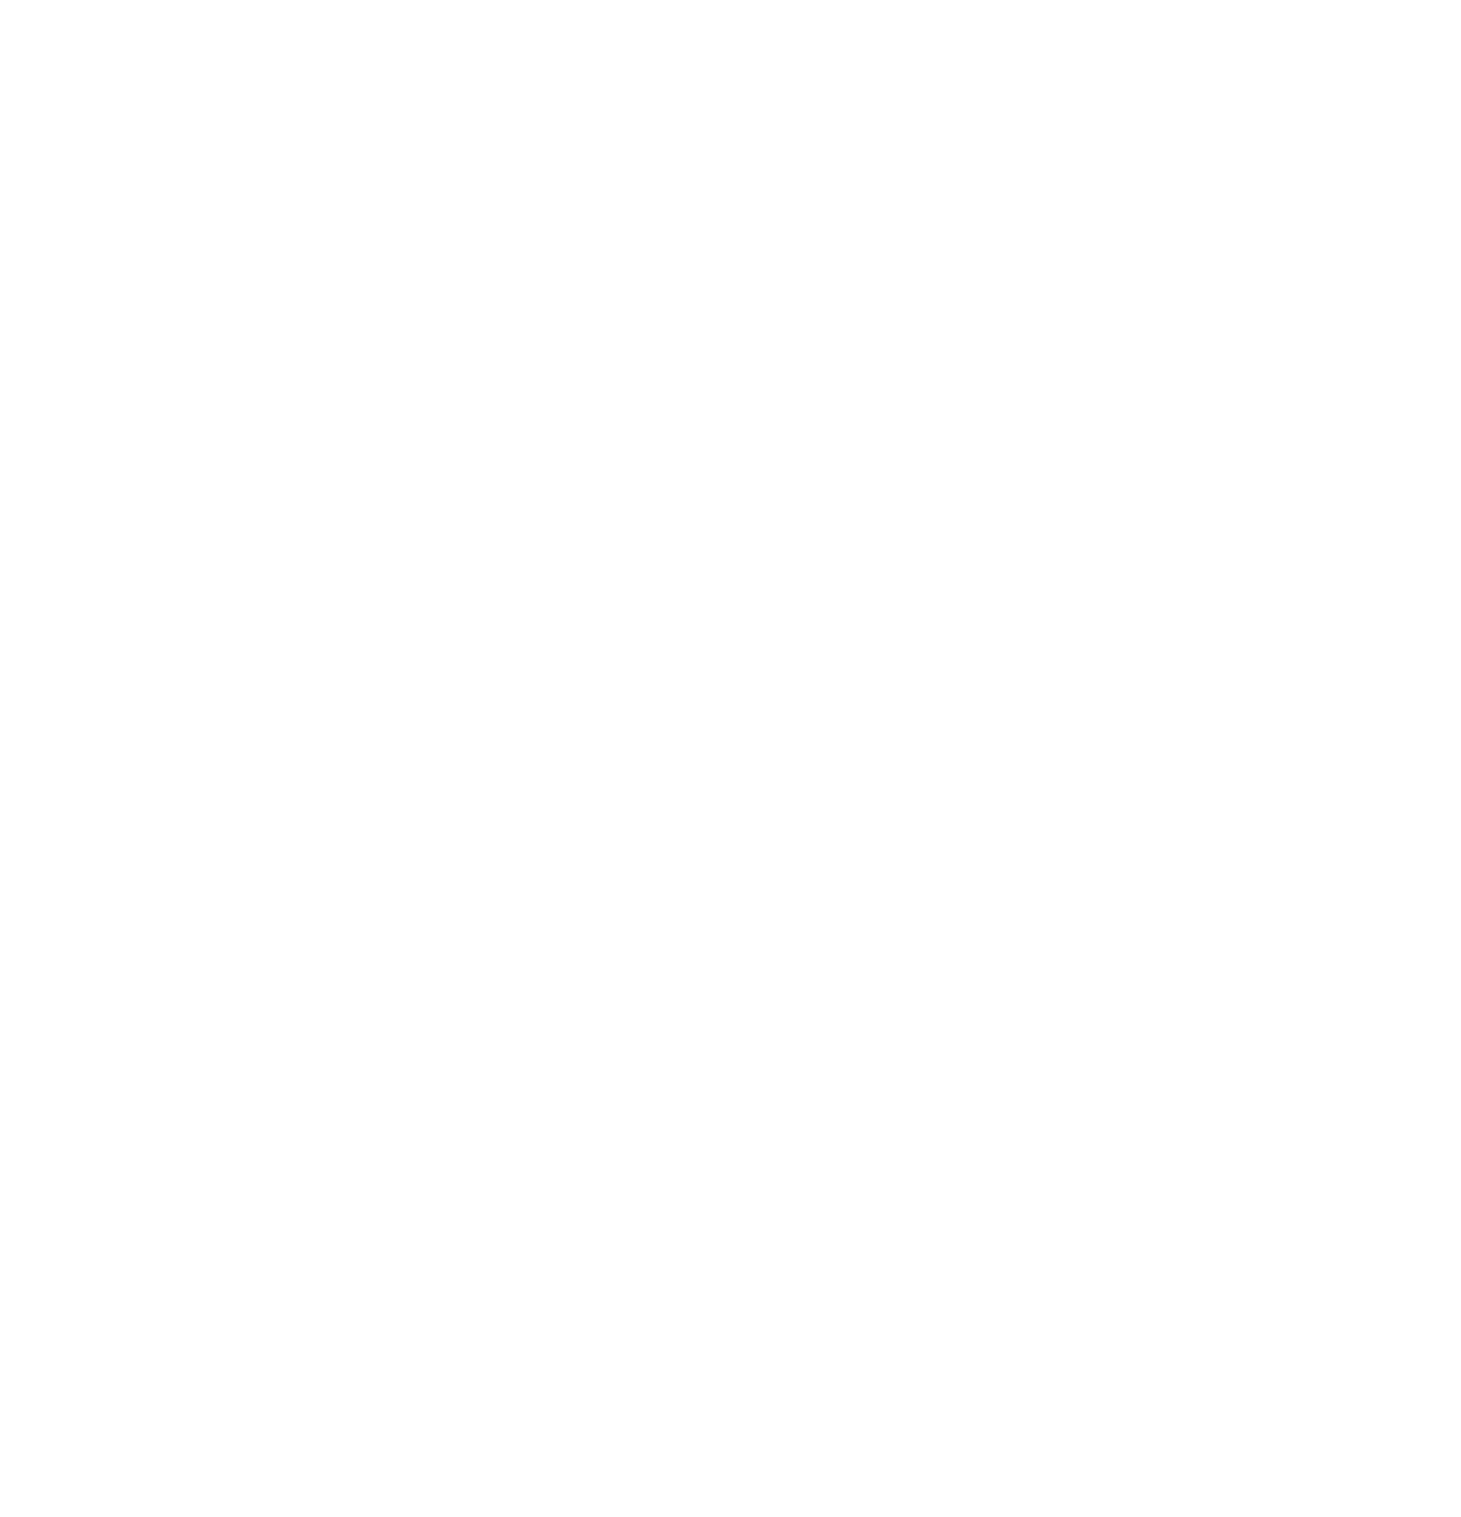 Brederode logo for dark backgrounds (transparent PNG)